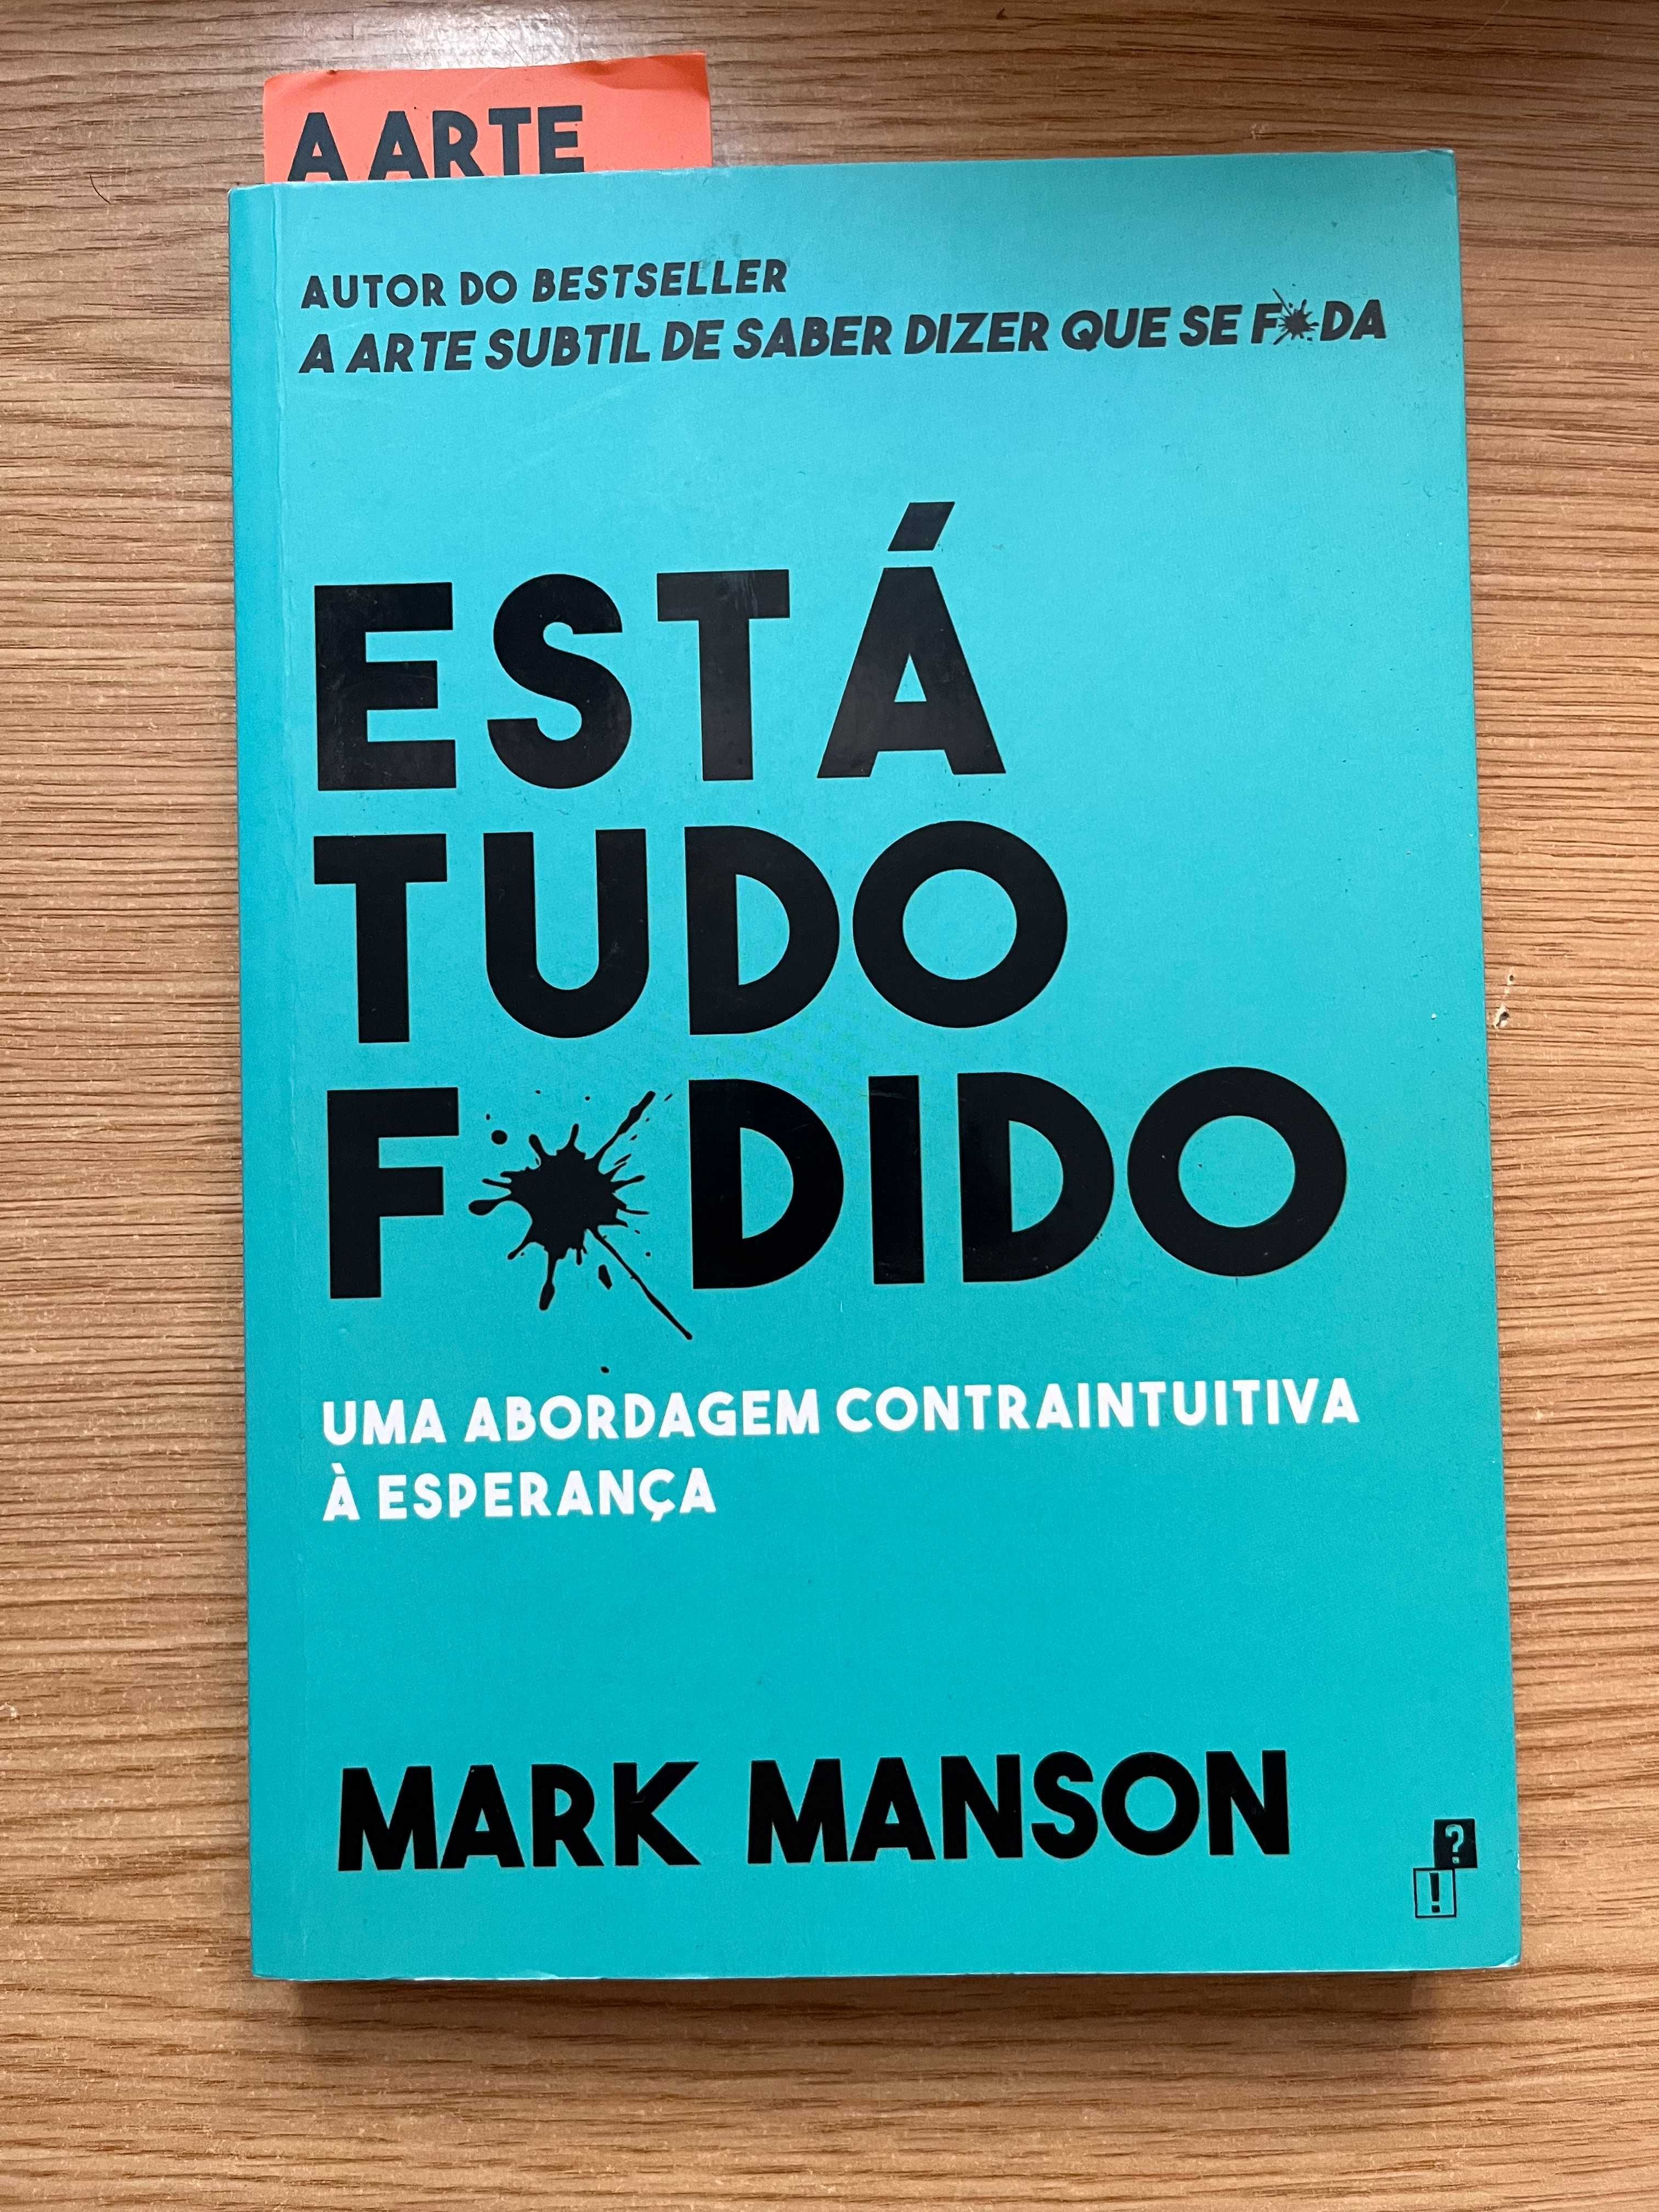 Livro "Está tudo F*dido" de Mark Manson